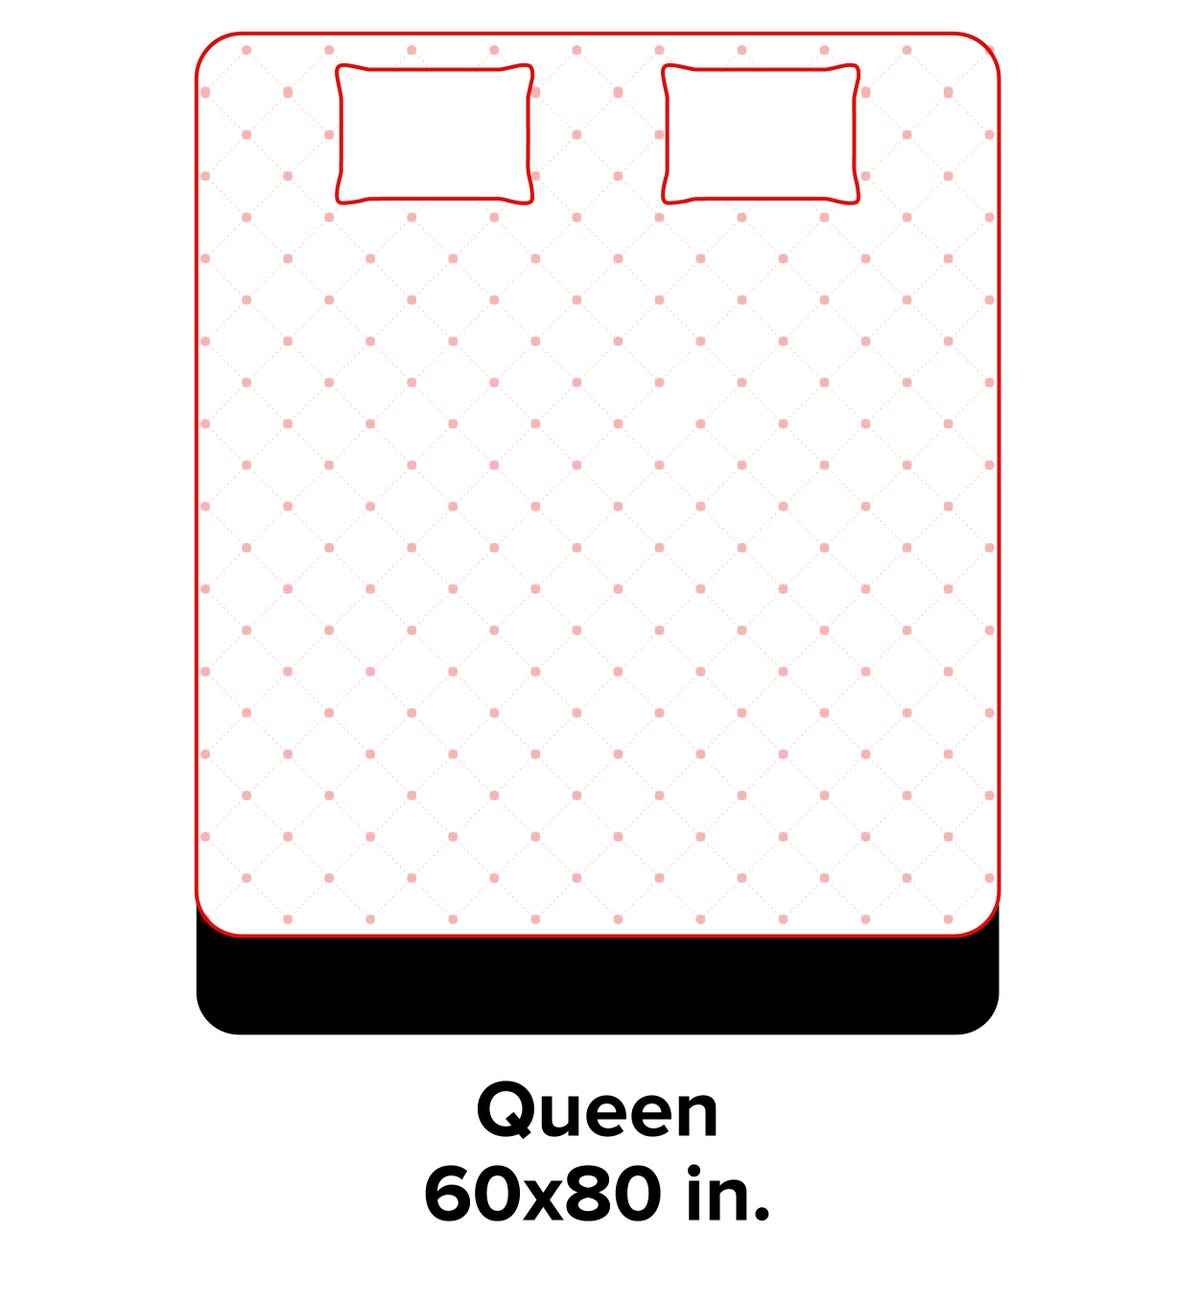 mattress-size-guide-graphic-cnet-queen